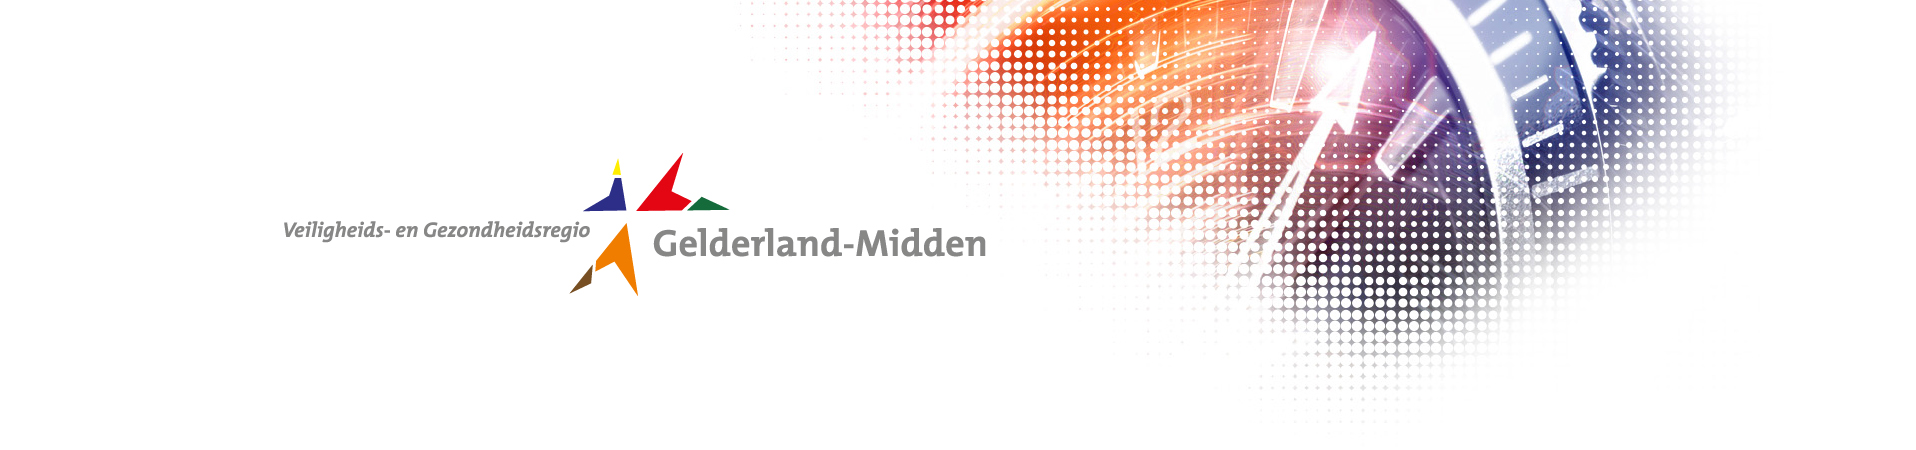 Veiligheids- en Gezondheidsregio Gelderland-Midden